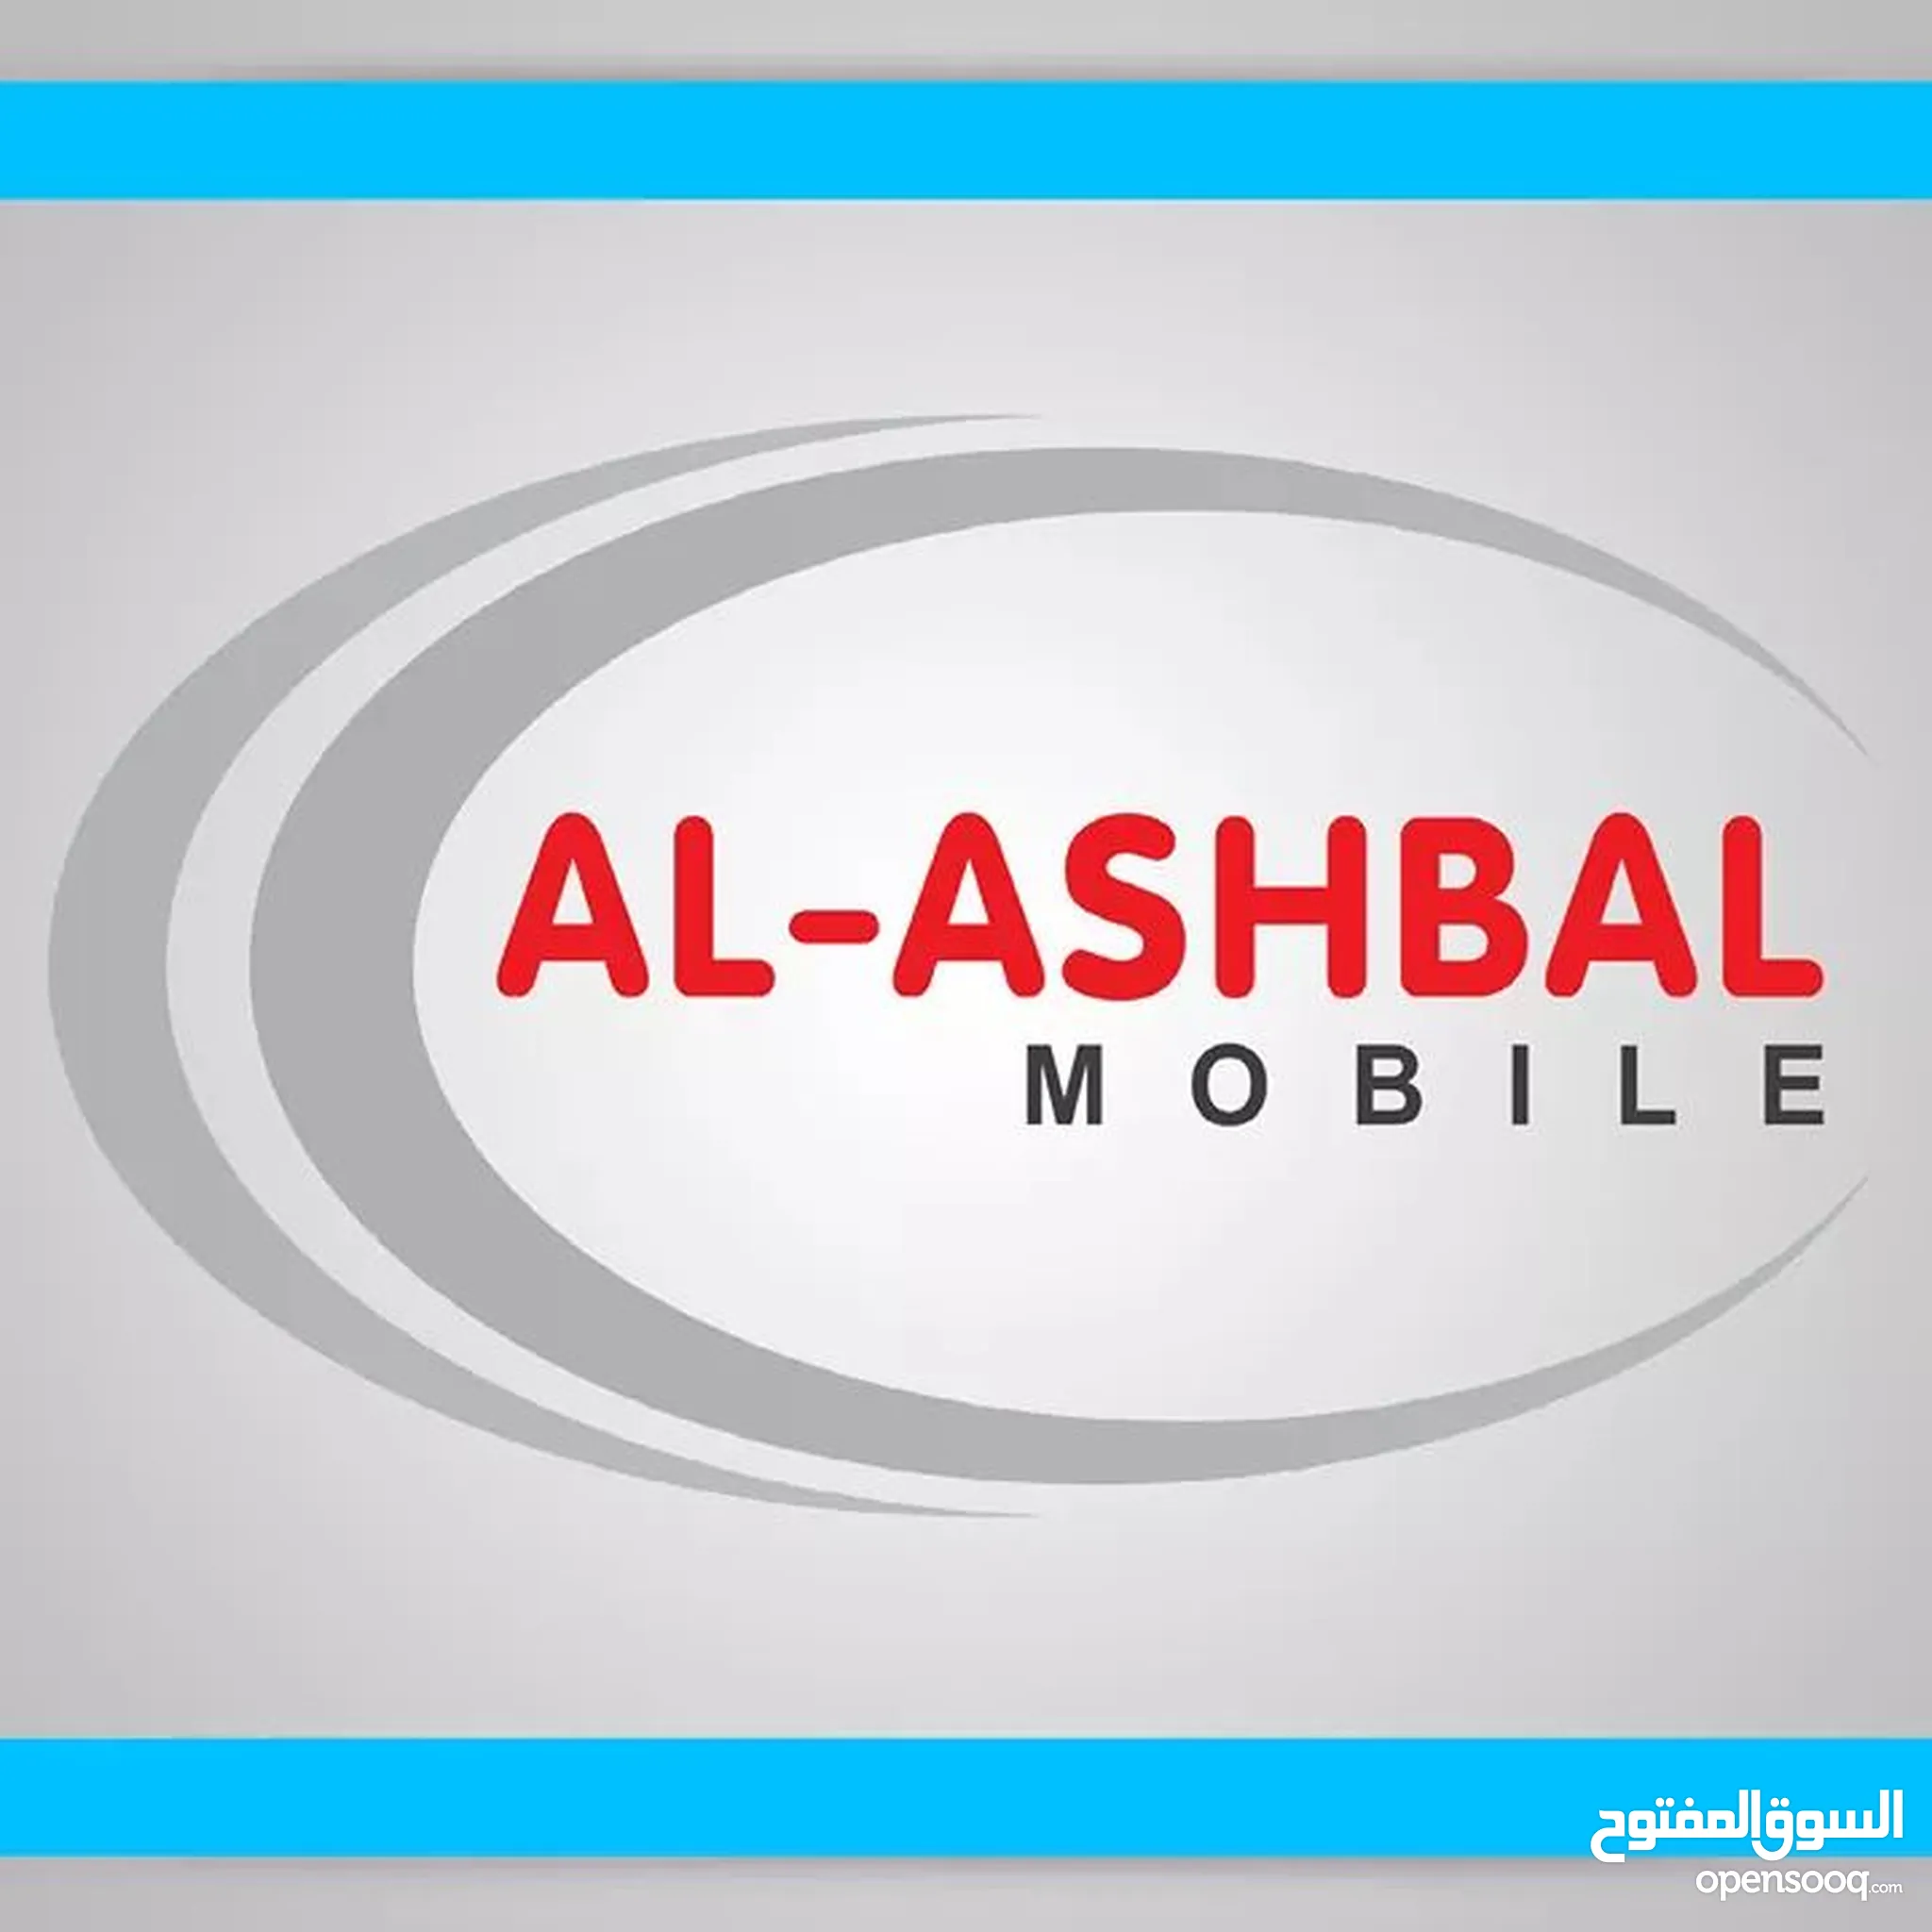 ALASHBAL MOBILE (الاشبال موبايل)